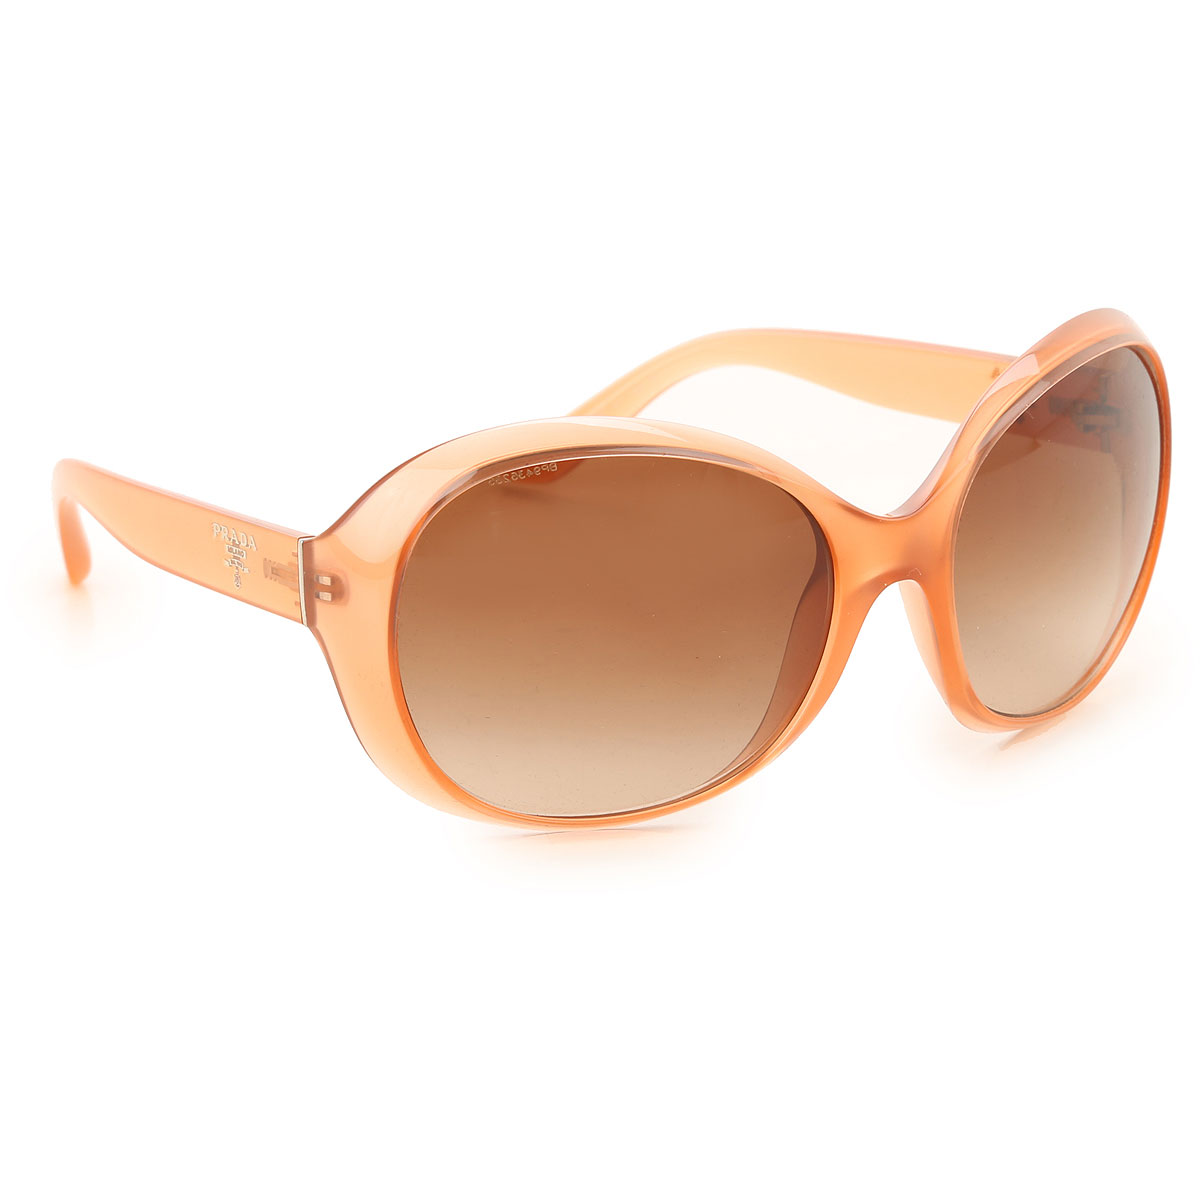 Sunglasses Prada, Style code: spr04o-gac-1z1